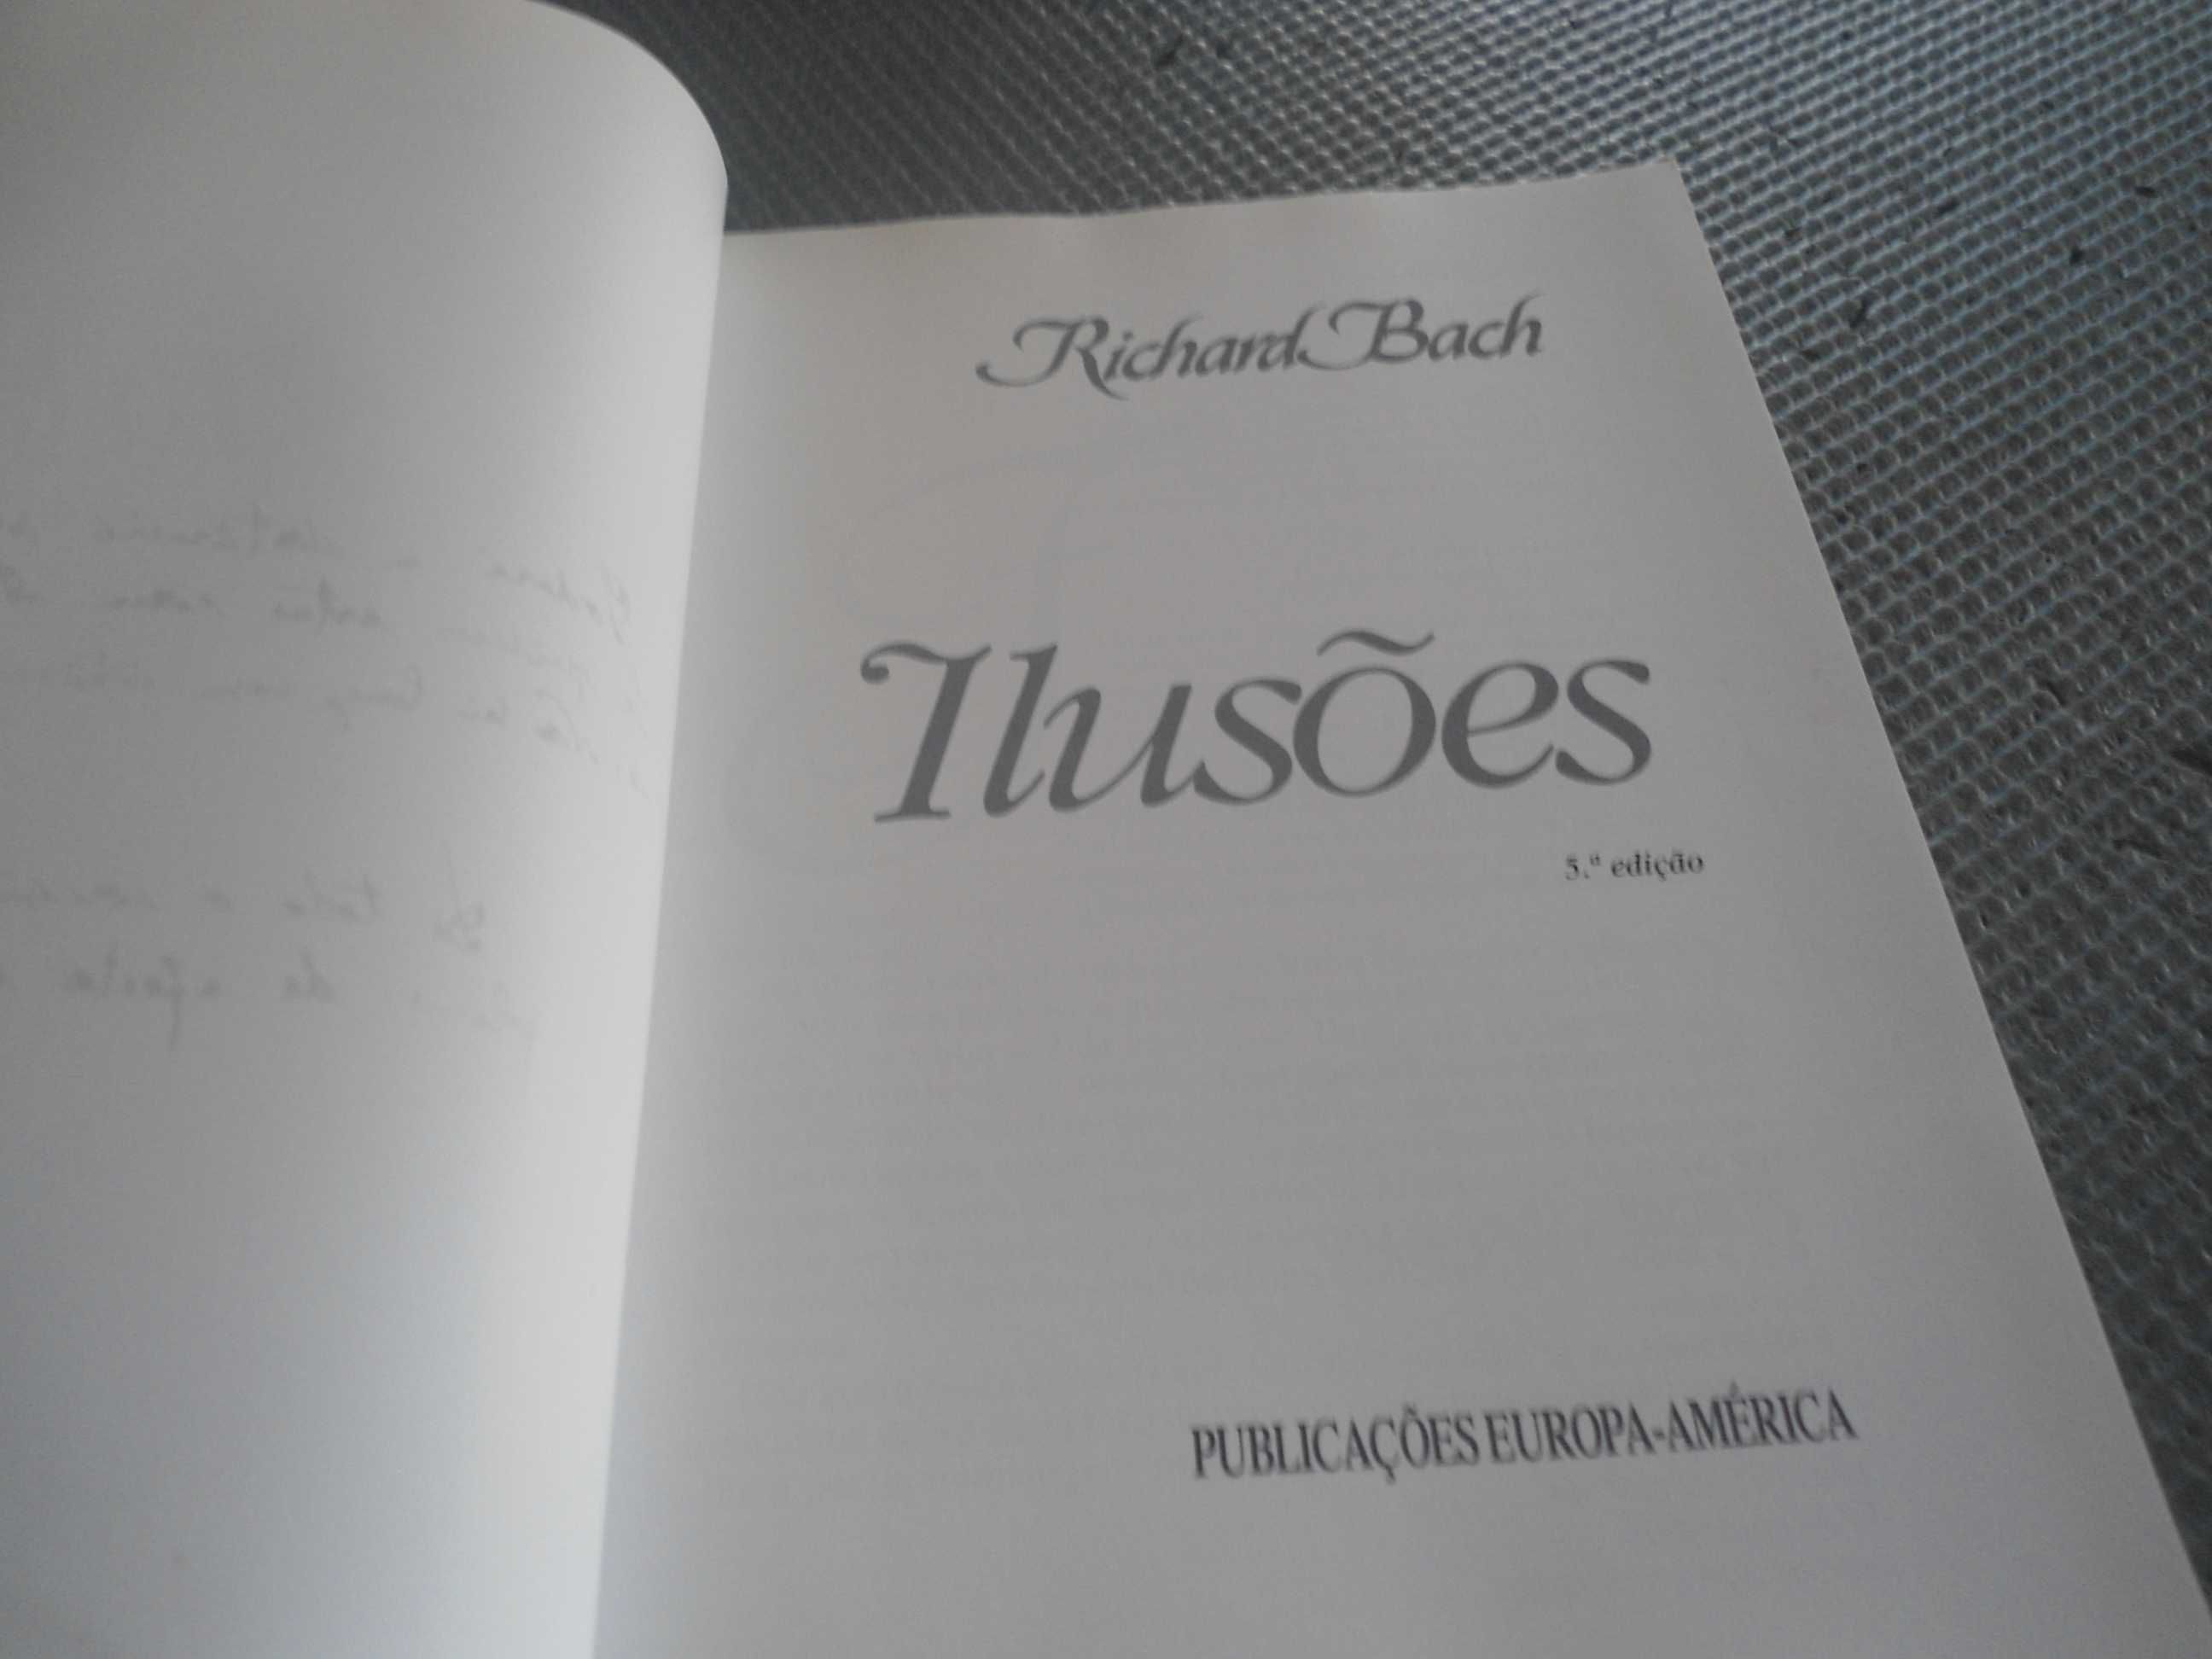 IIlusões por Richard Bach (envio grátis)